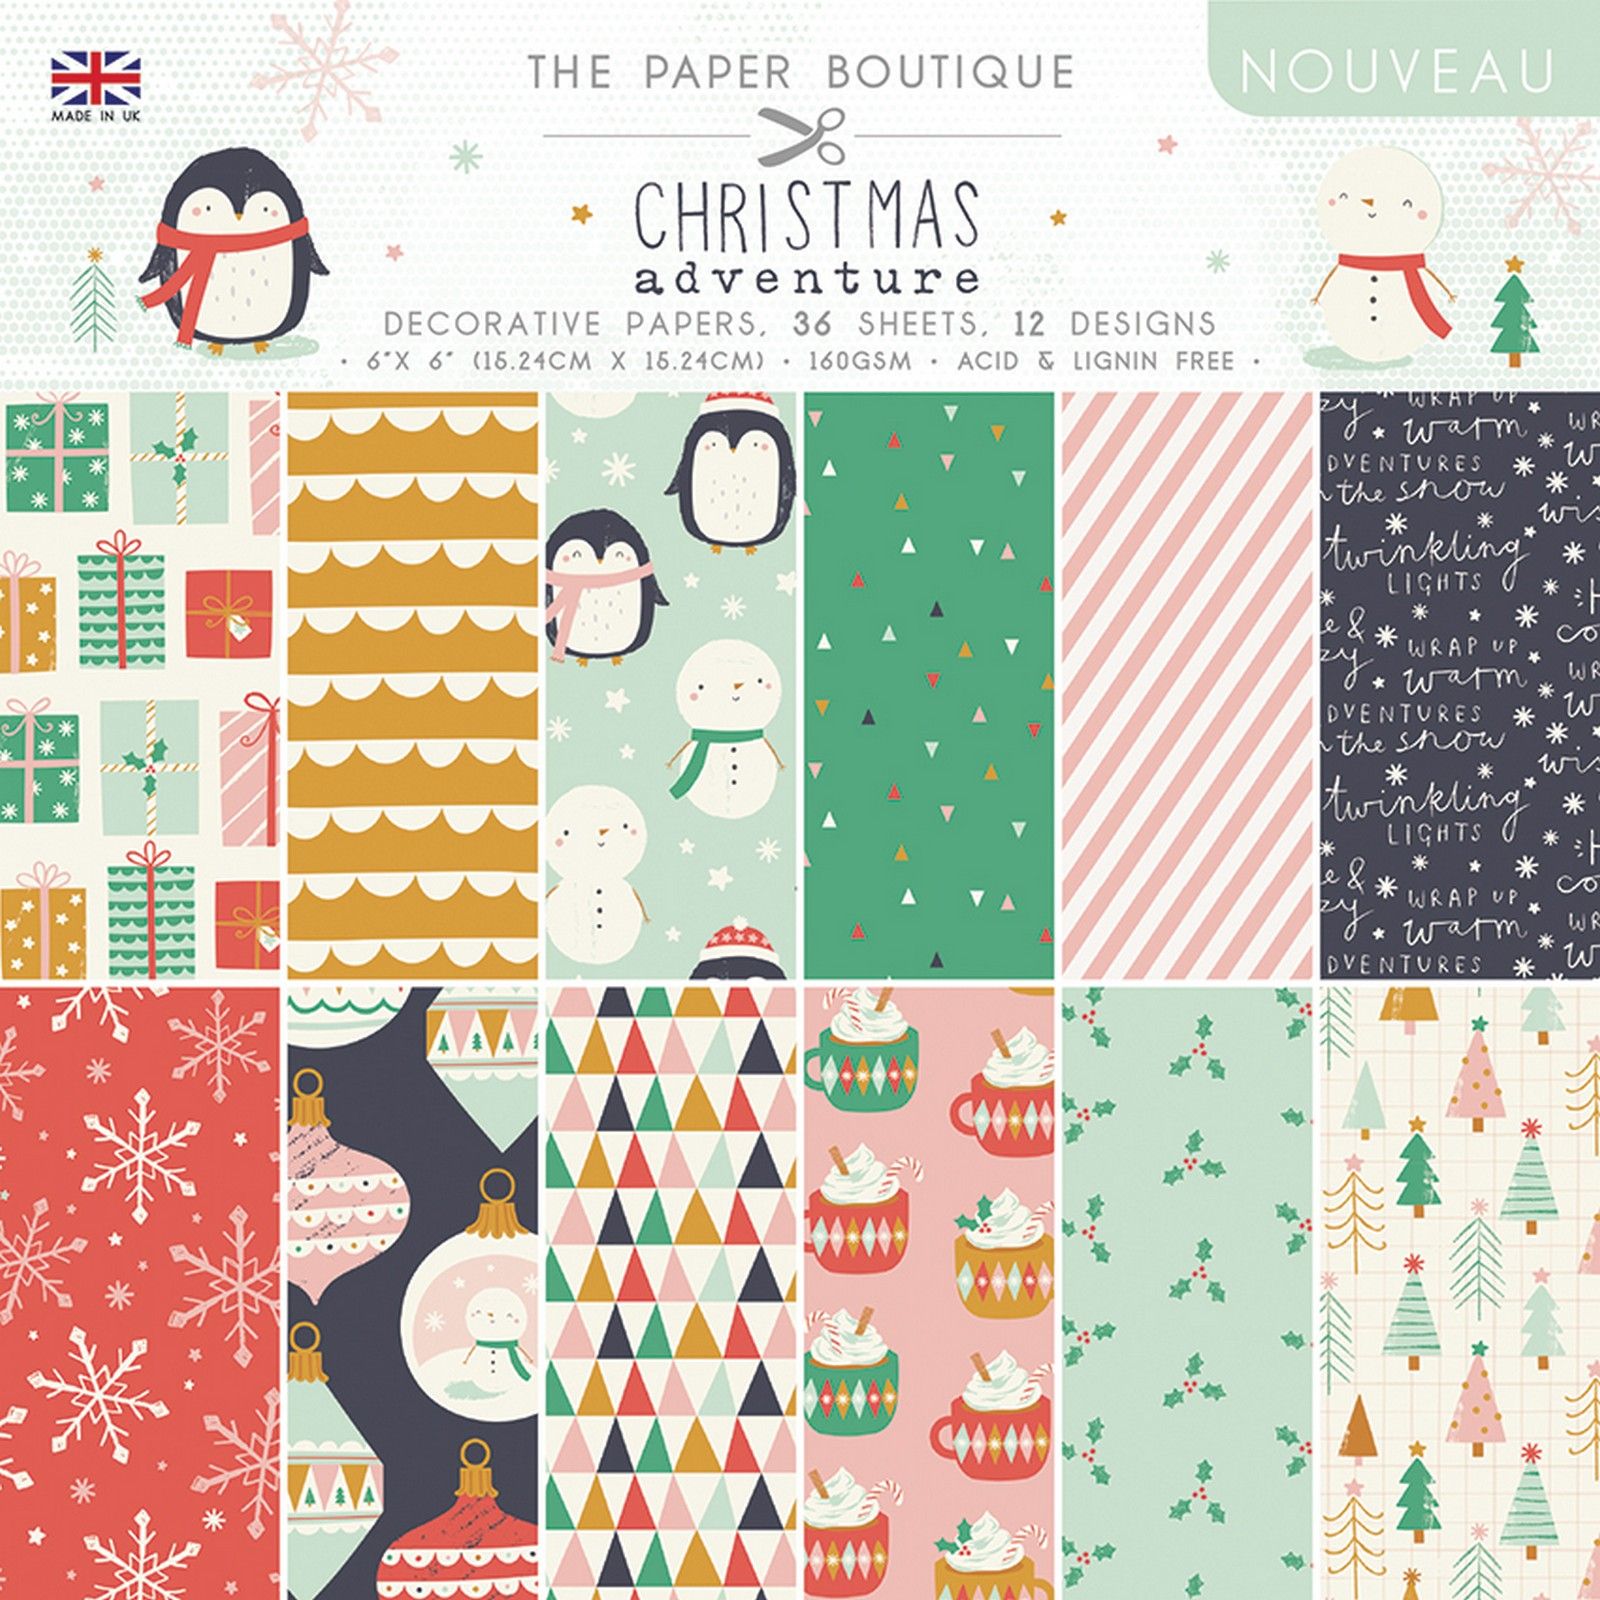 The Paper Boutique • Christmas adventure decorative papers 15,24x15,24cm